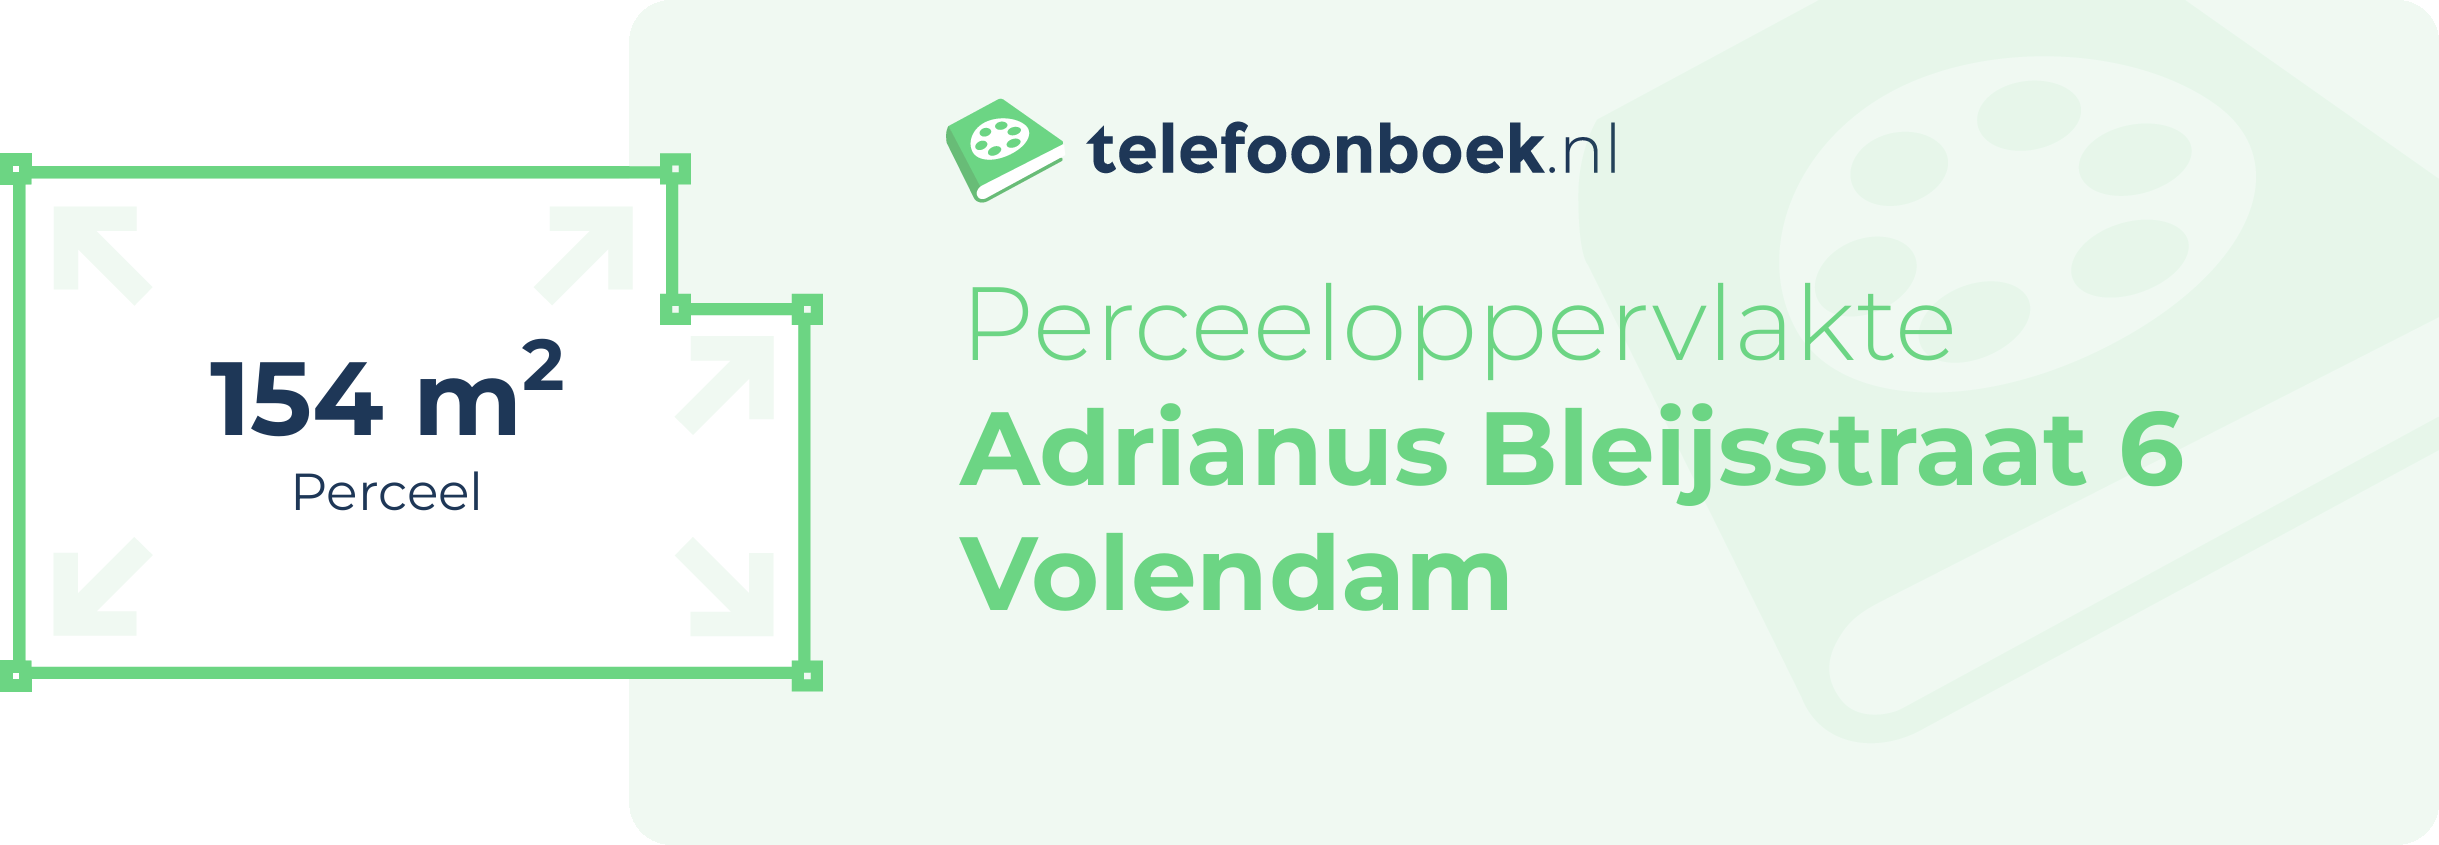 Perceeloppervlakte Adrianus Bleijsstraat 6 Volendam